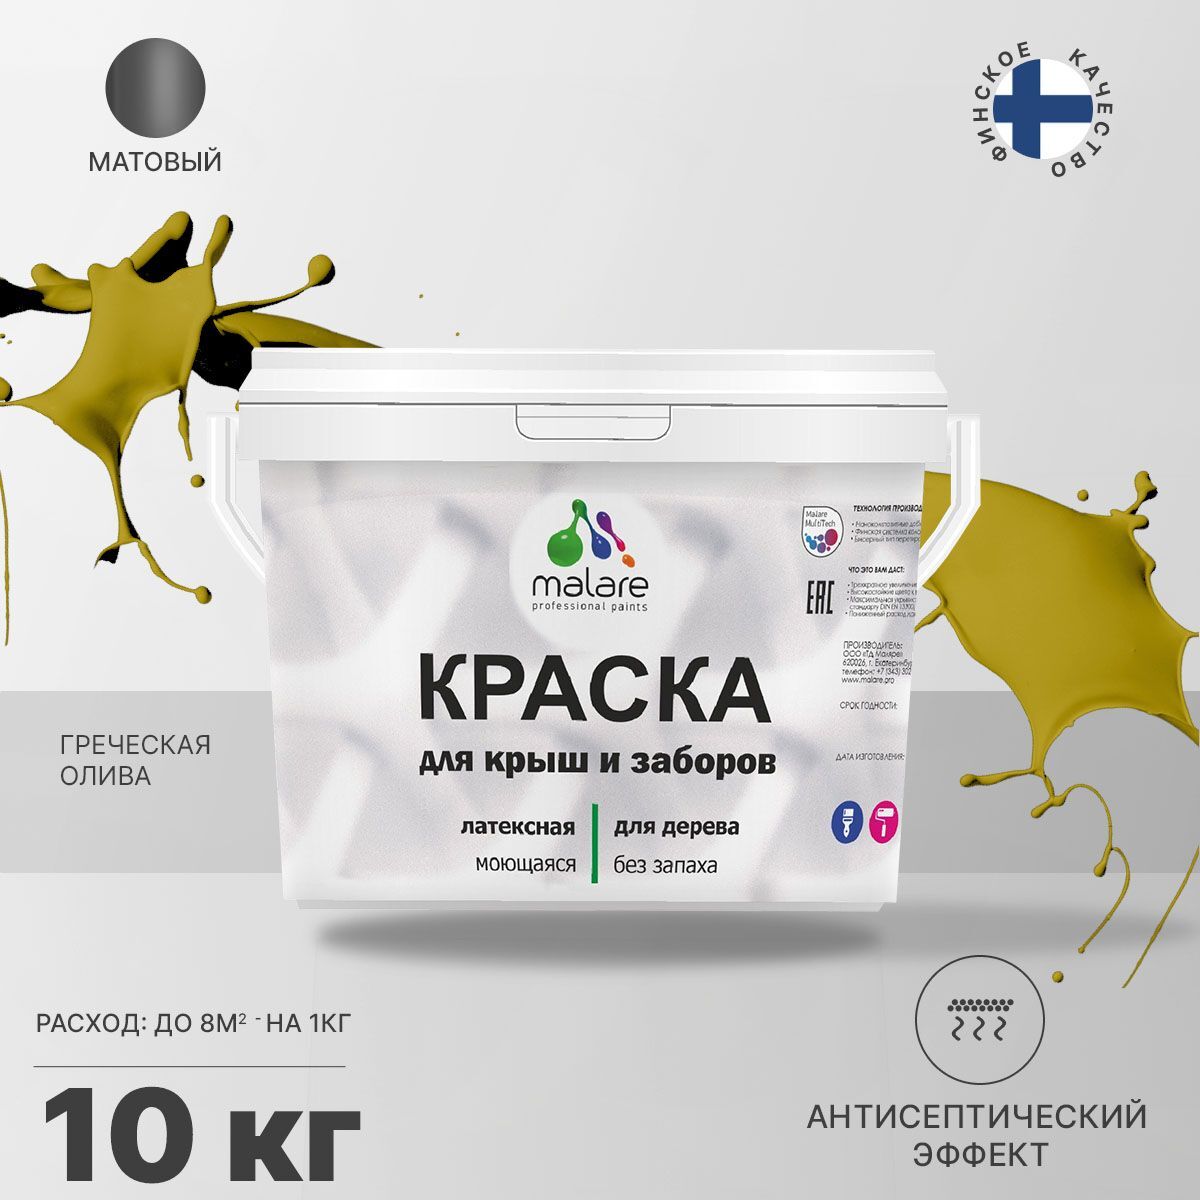 Краска Malare специализированная Акриловая, Латексная, Полиуретановая, 10 кг греческая олива КДЗАБКРШМ060